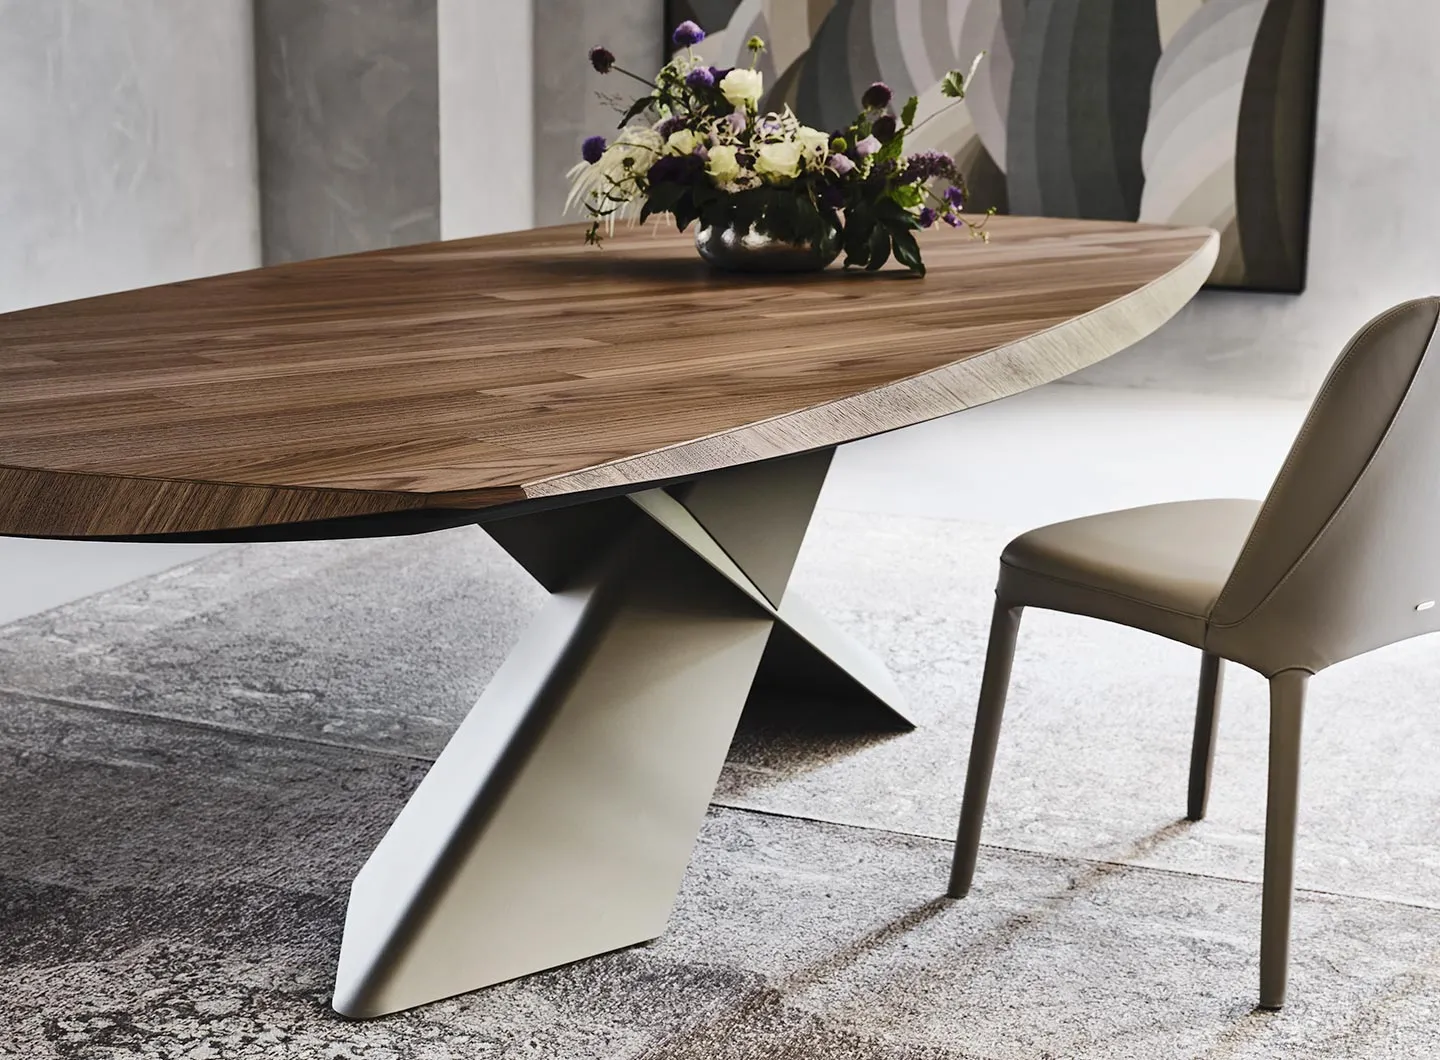 Tyron Wood table